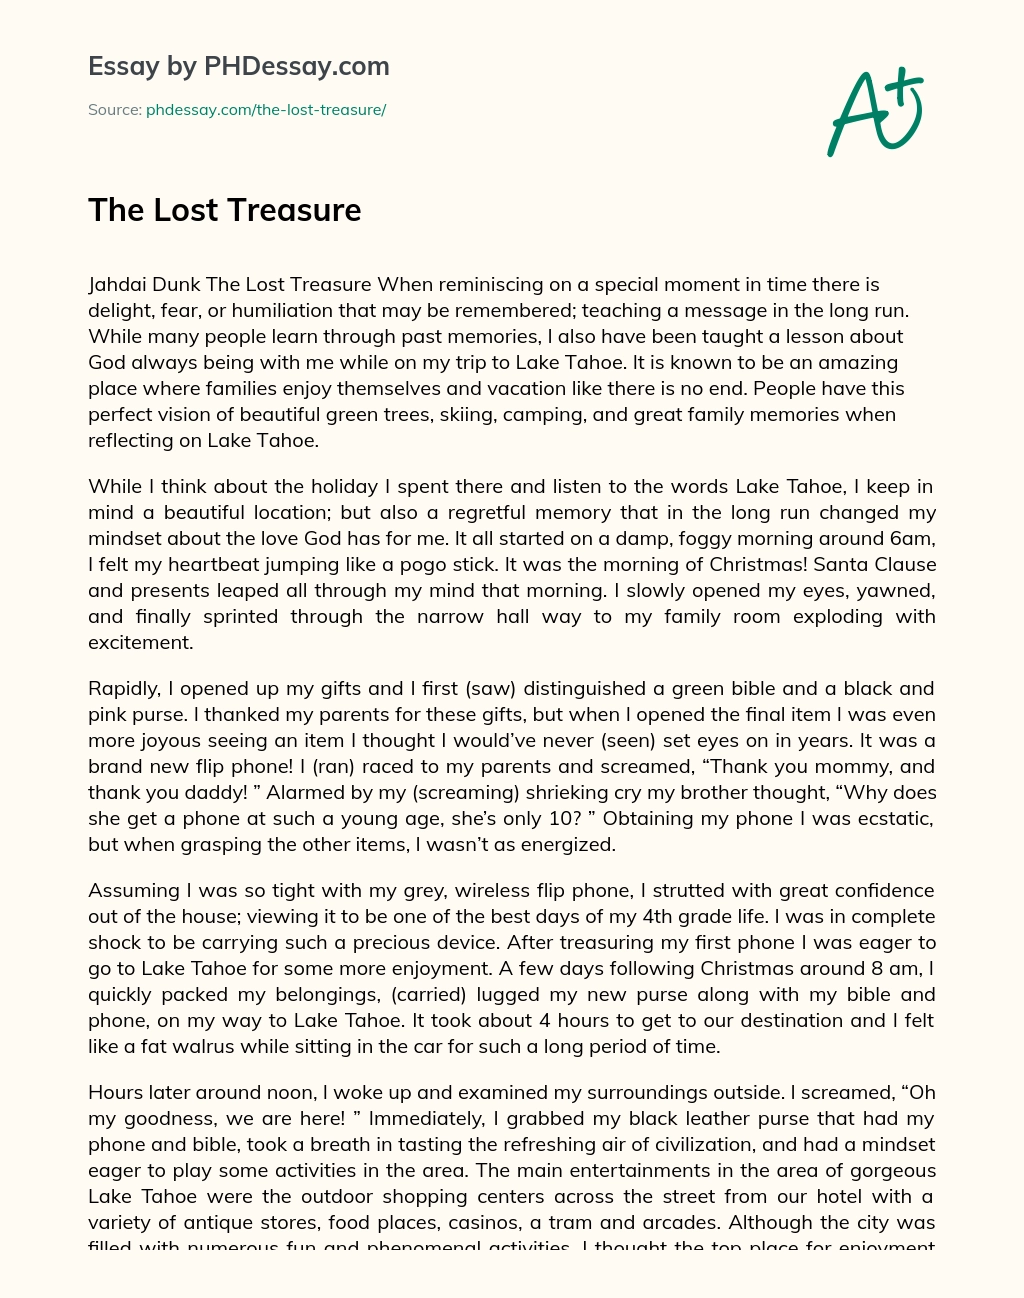 The Lost Treasure essay